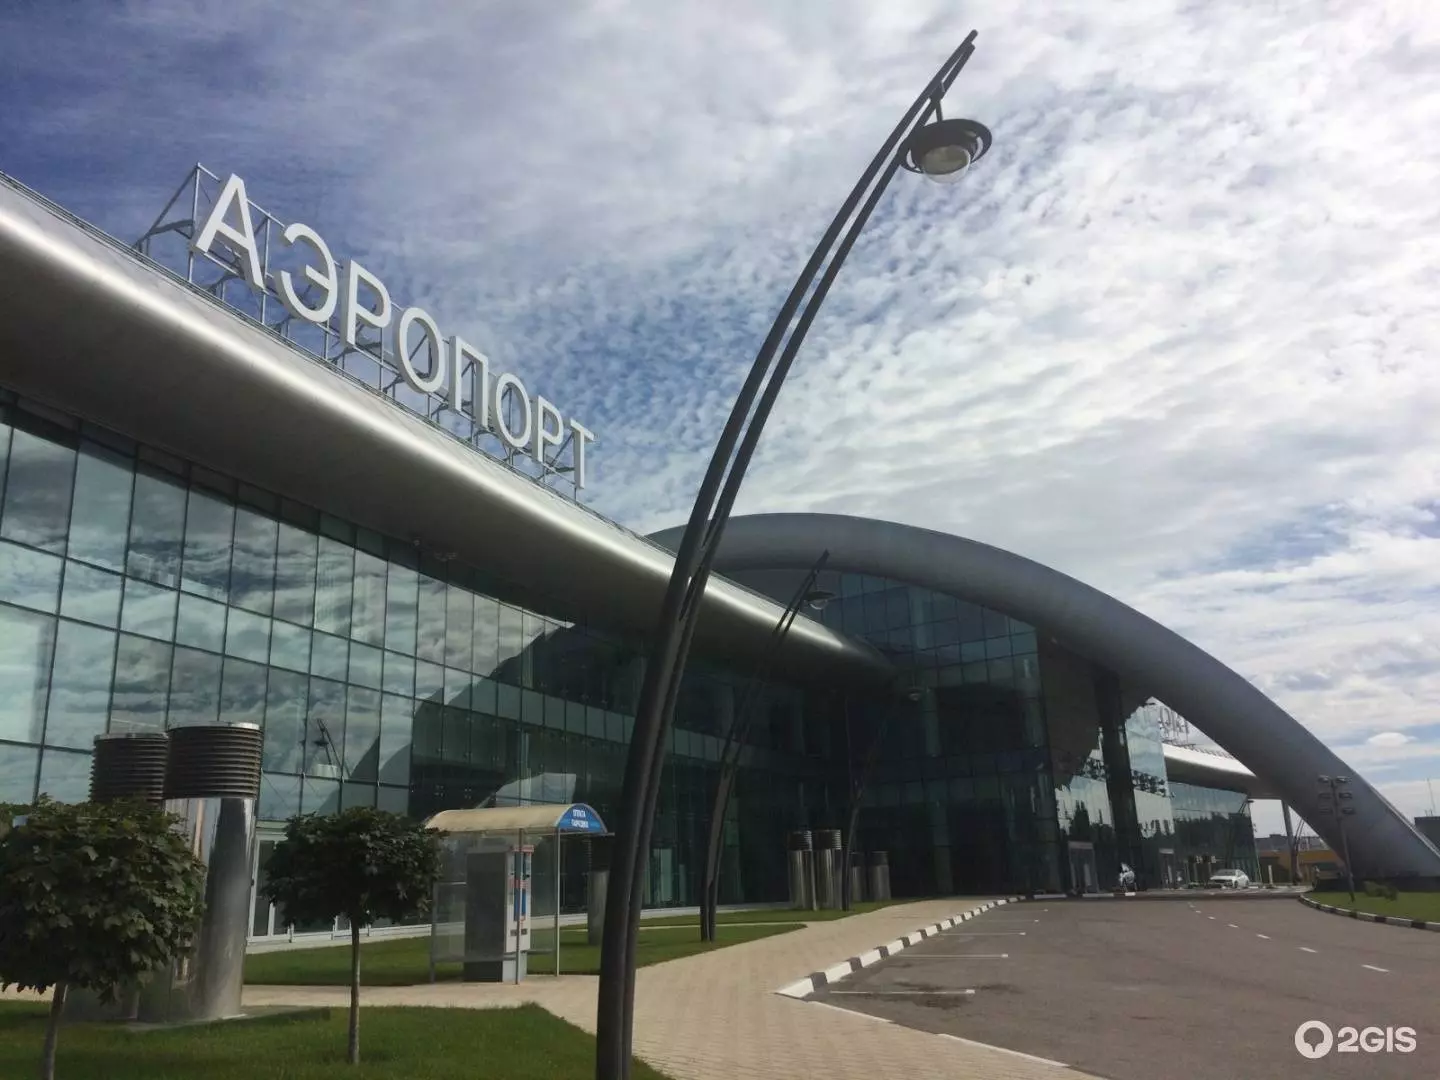 Белгород международный аэропорт